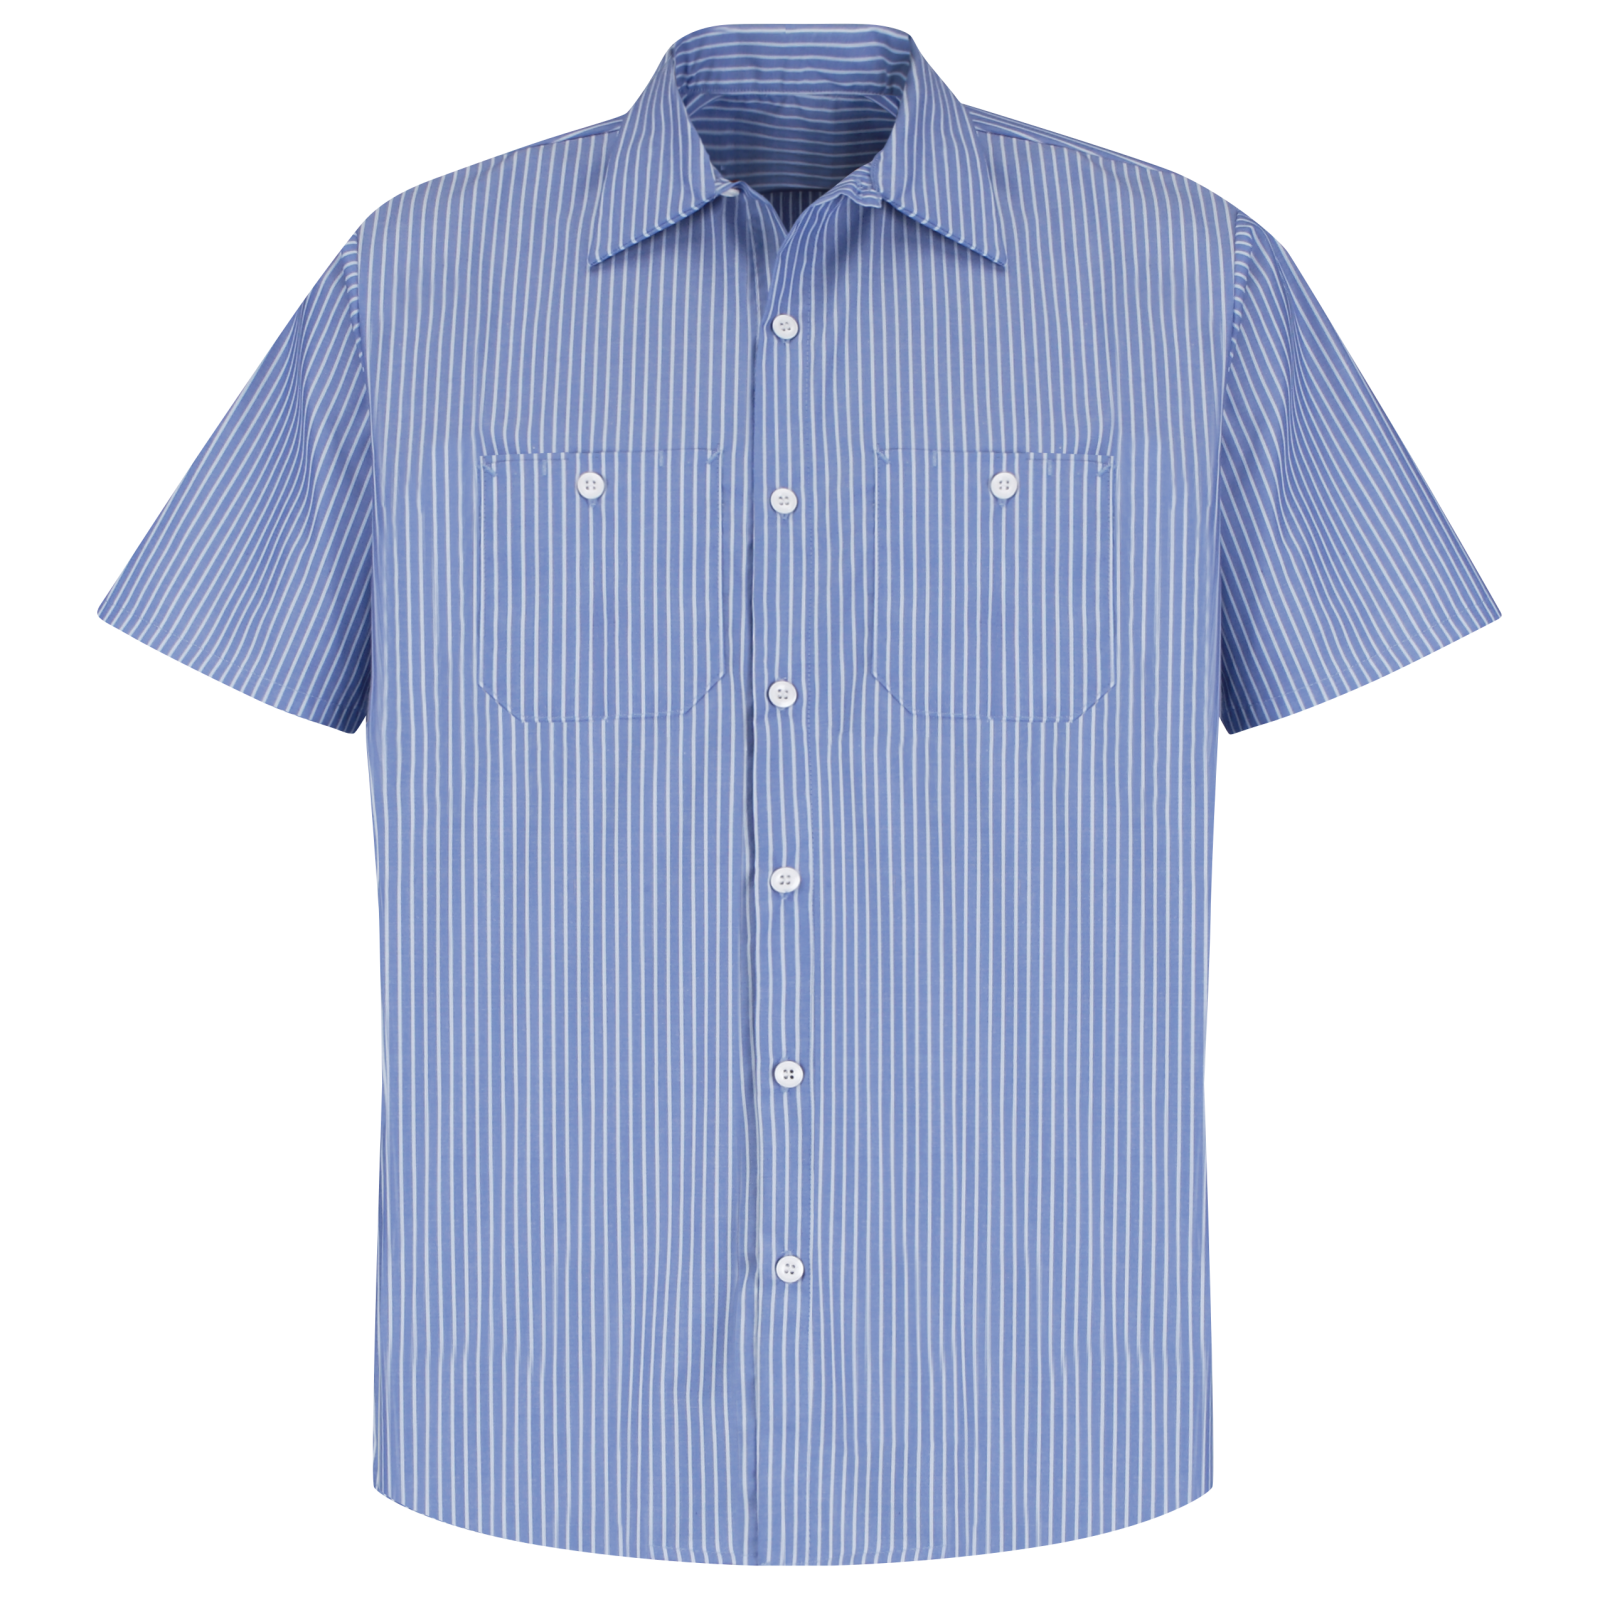 Men's Short Sleeve Striped Work Shirt